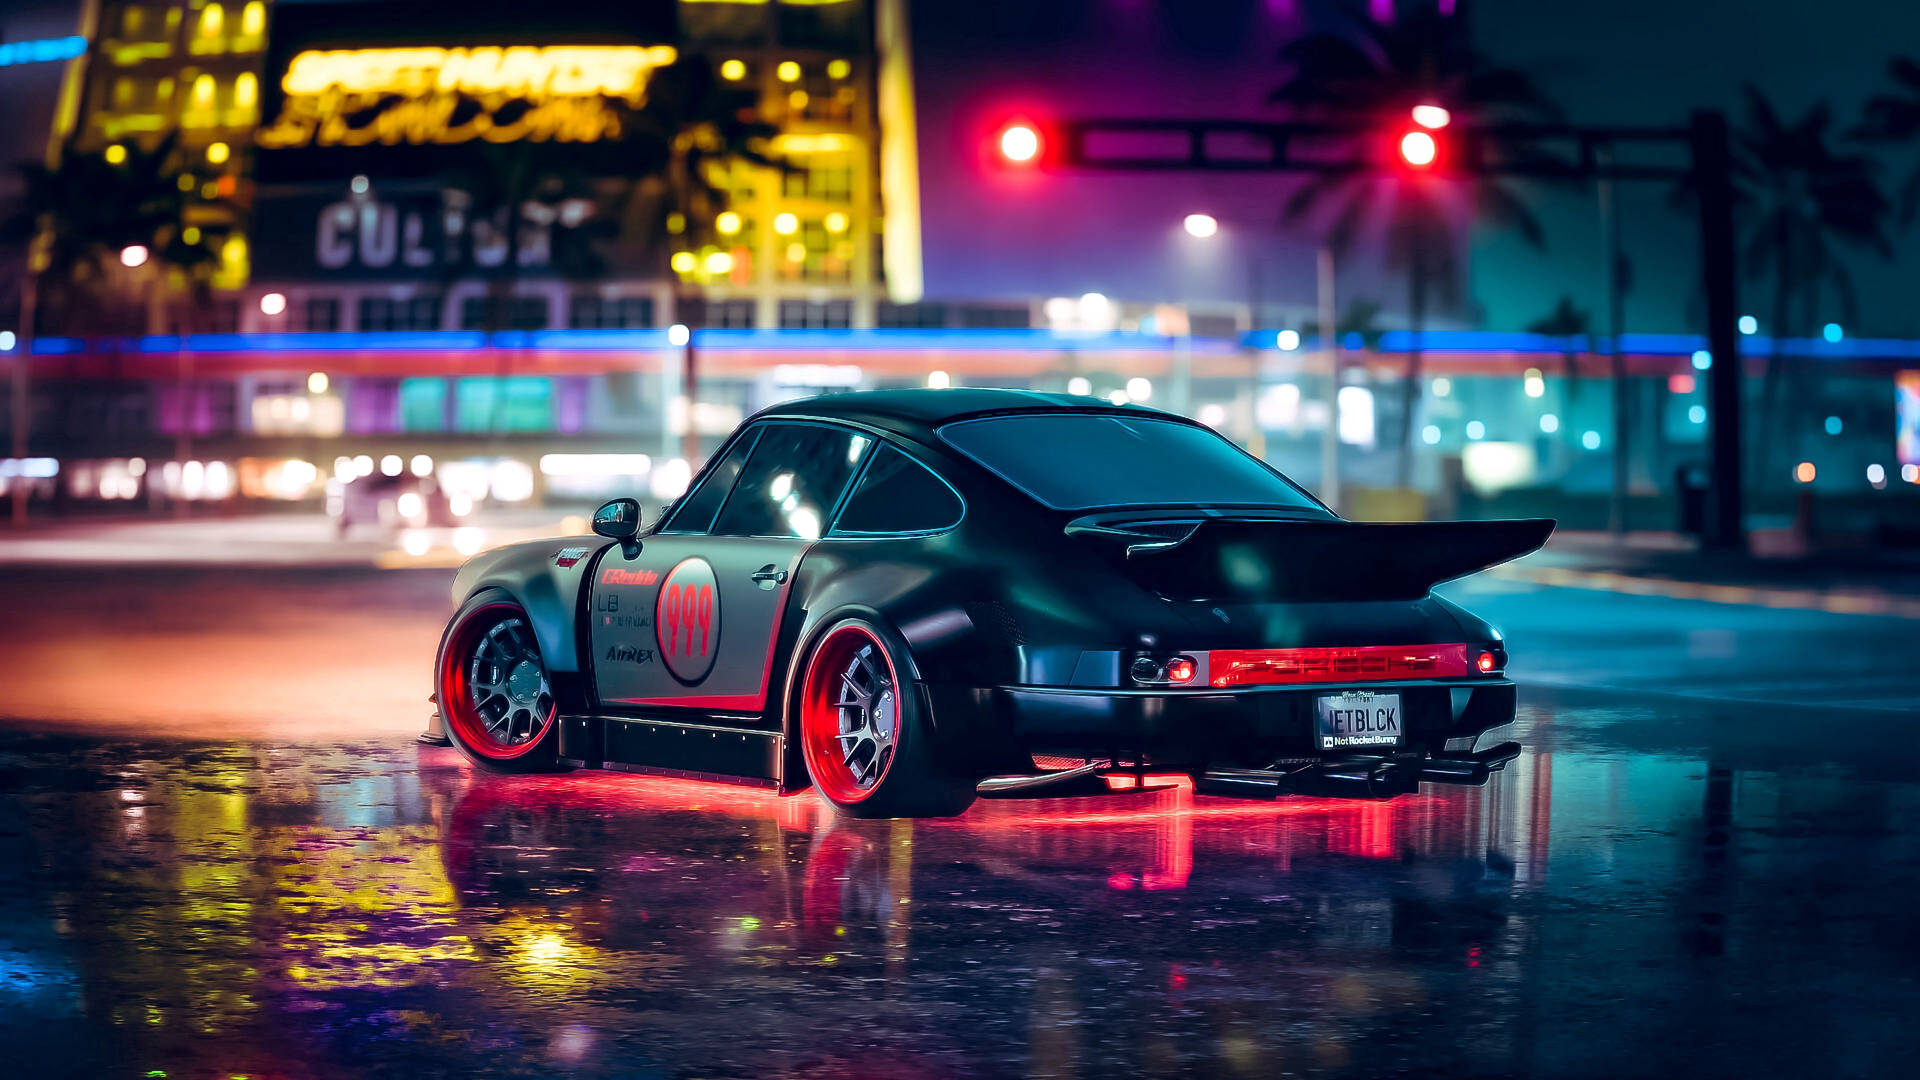 Porsche Neon Car Background